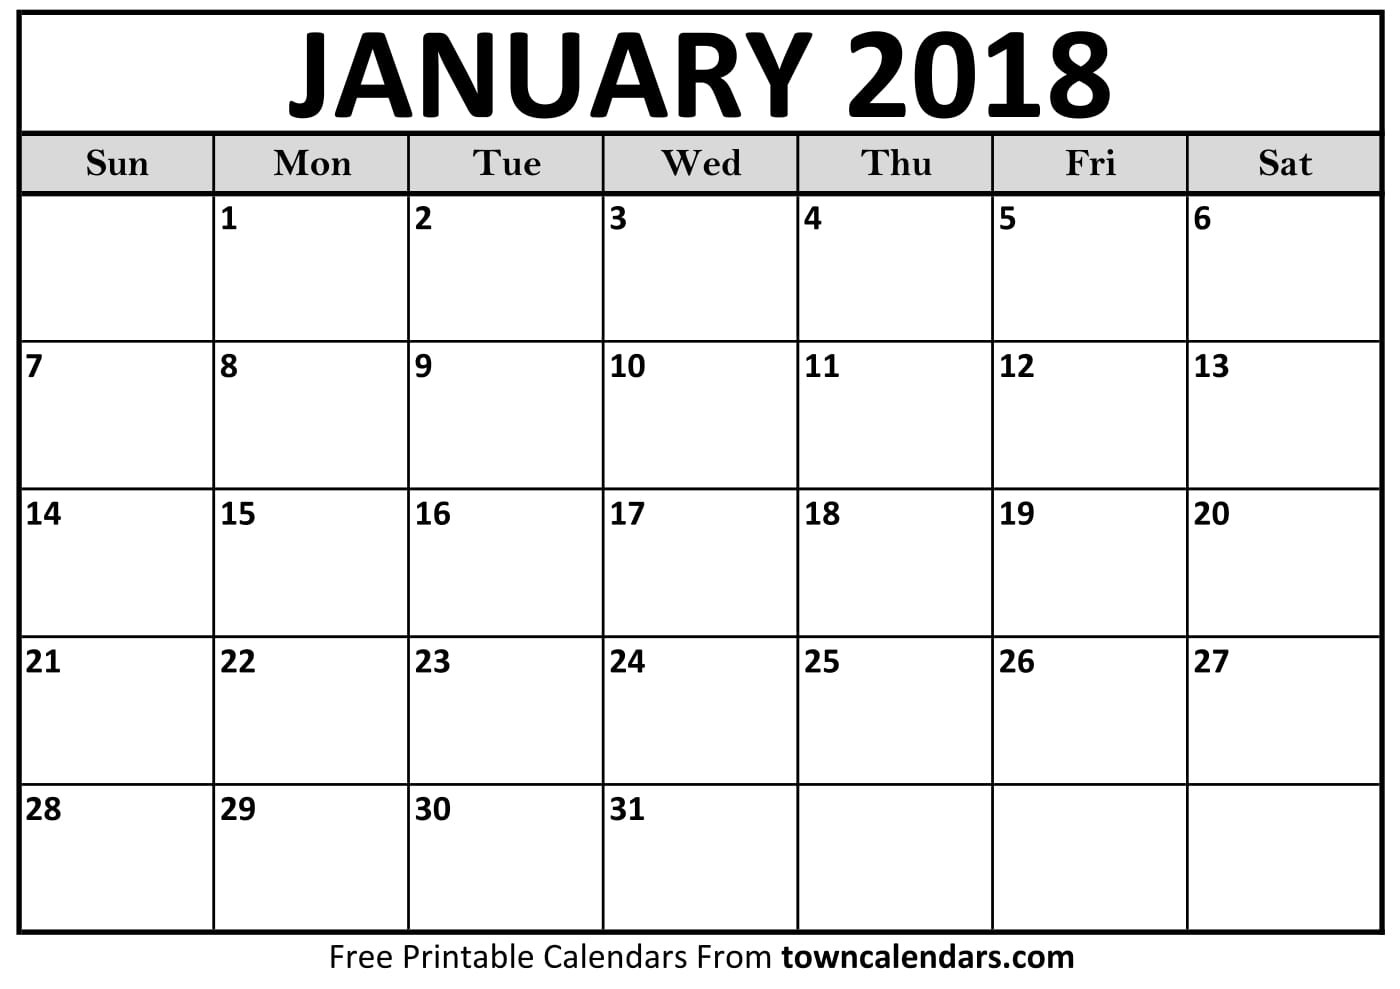 printable january 2018 calendar towncalendars com